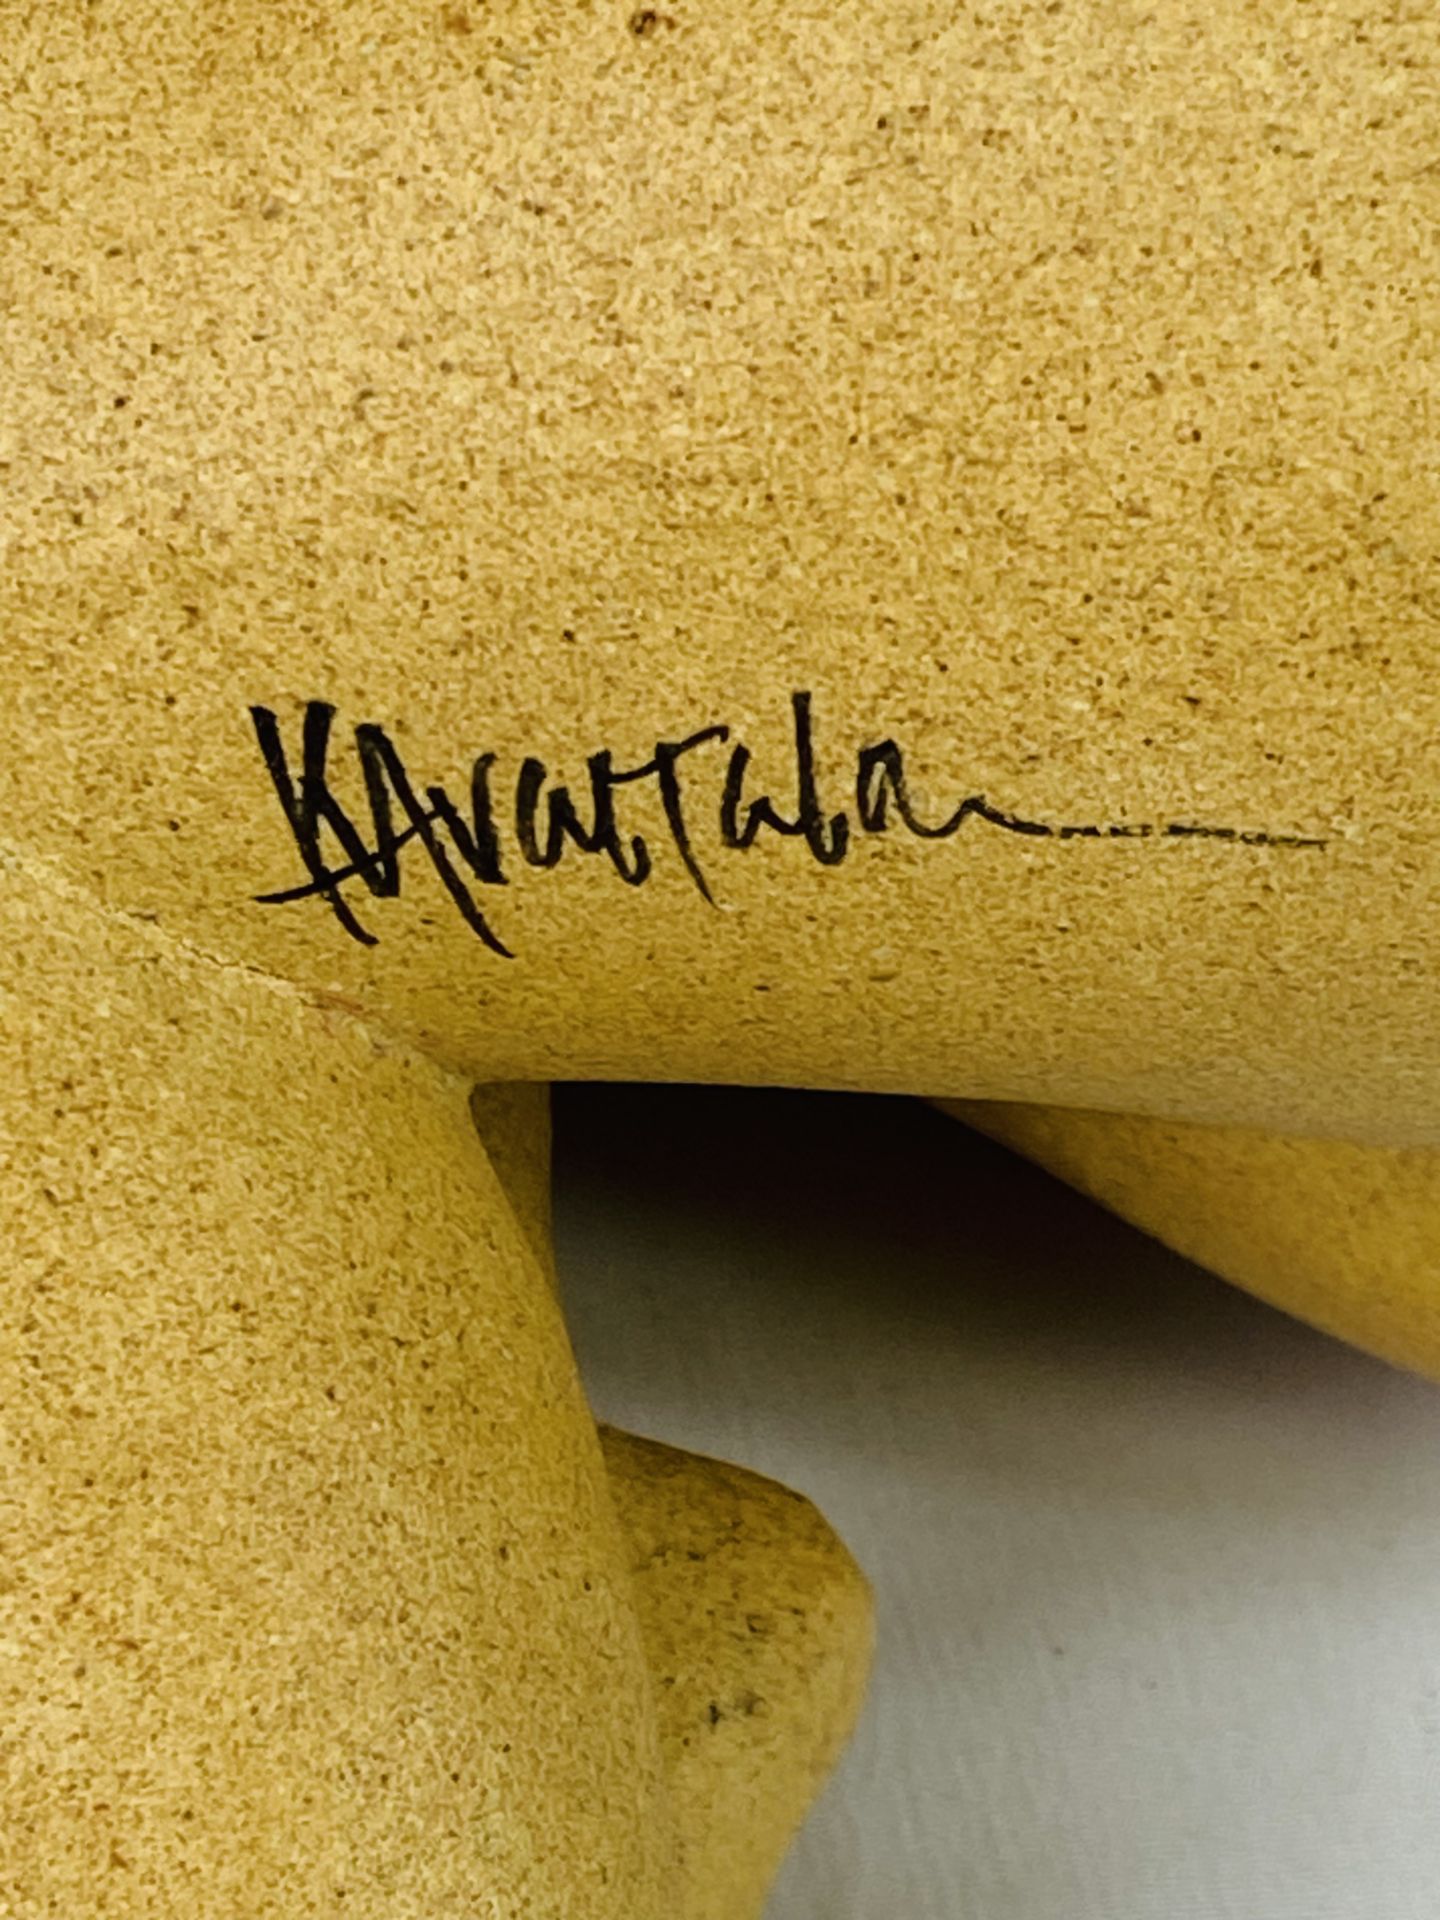 K Arastala, Stoneware seated nude female figure, signed by artist, - Image 4 of 4